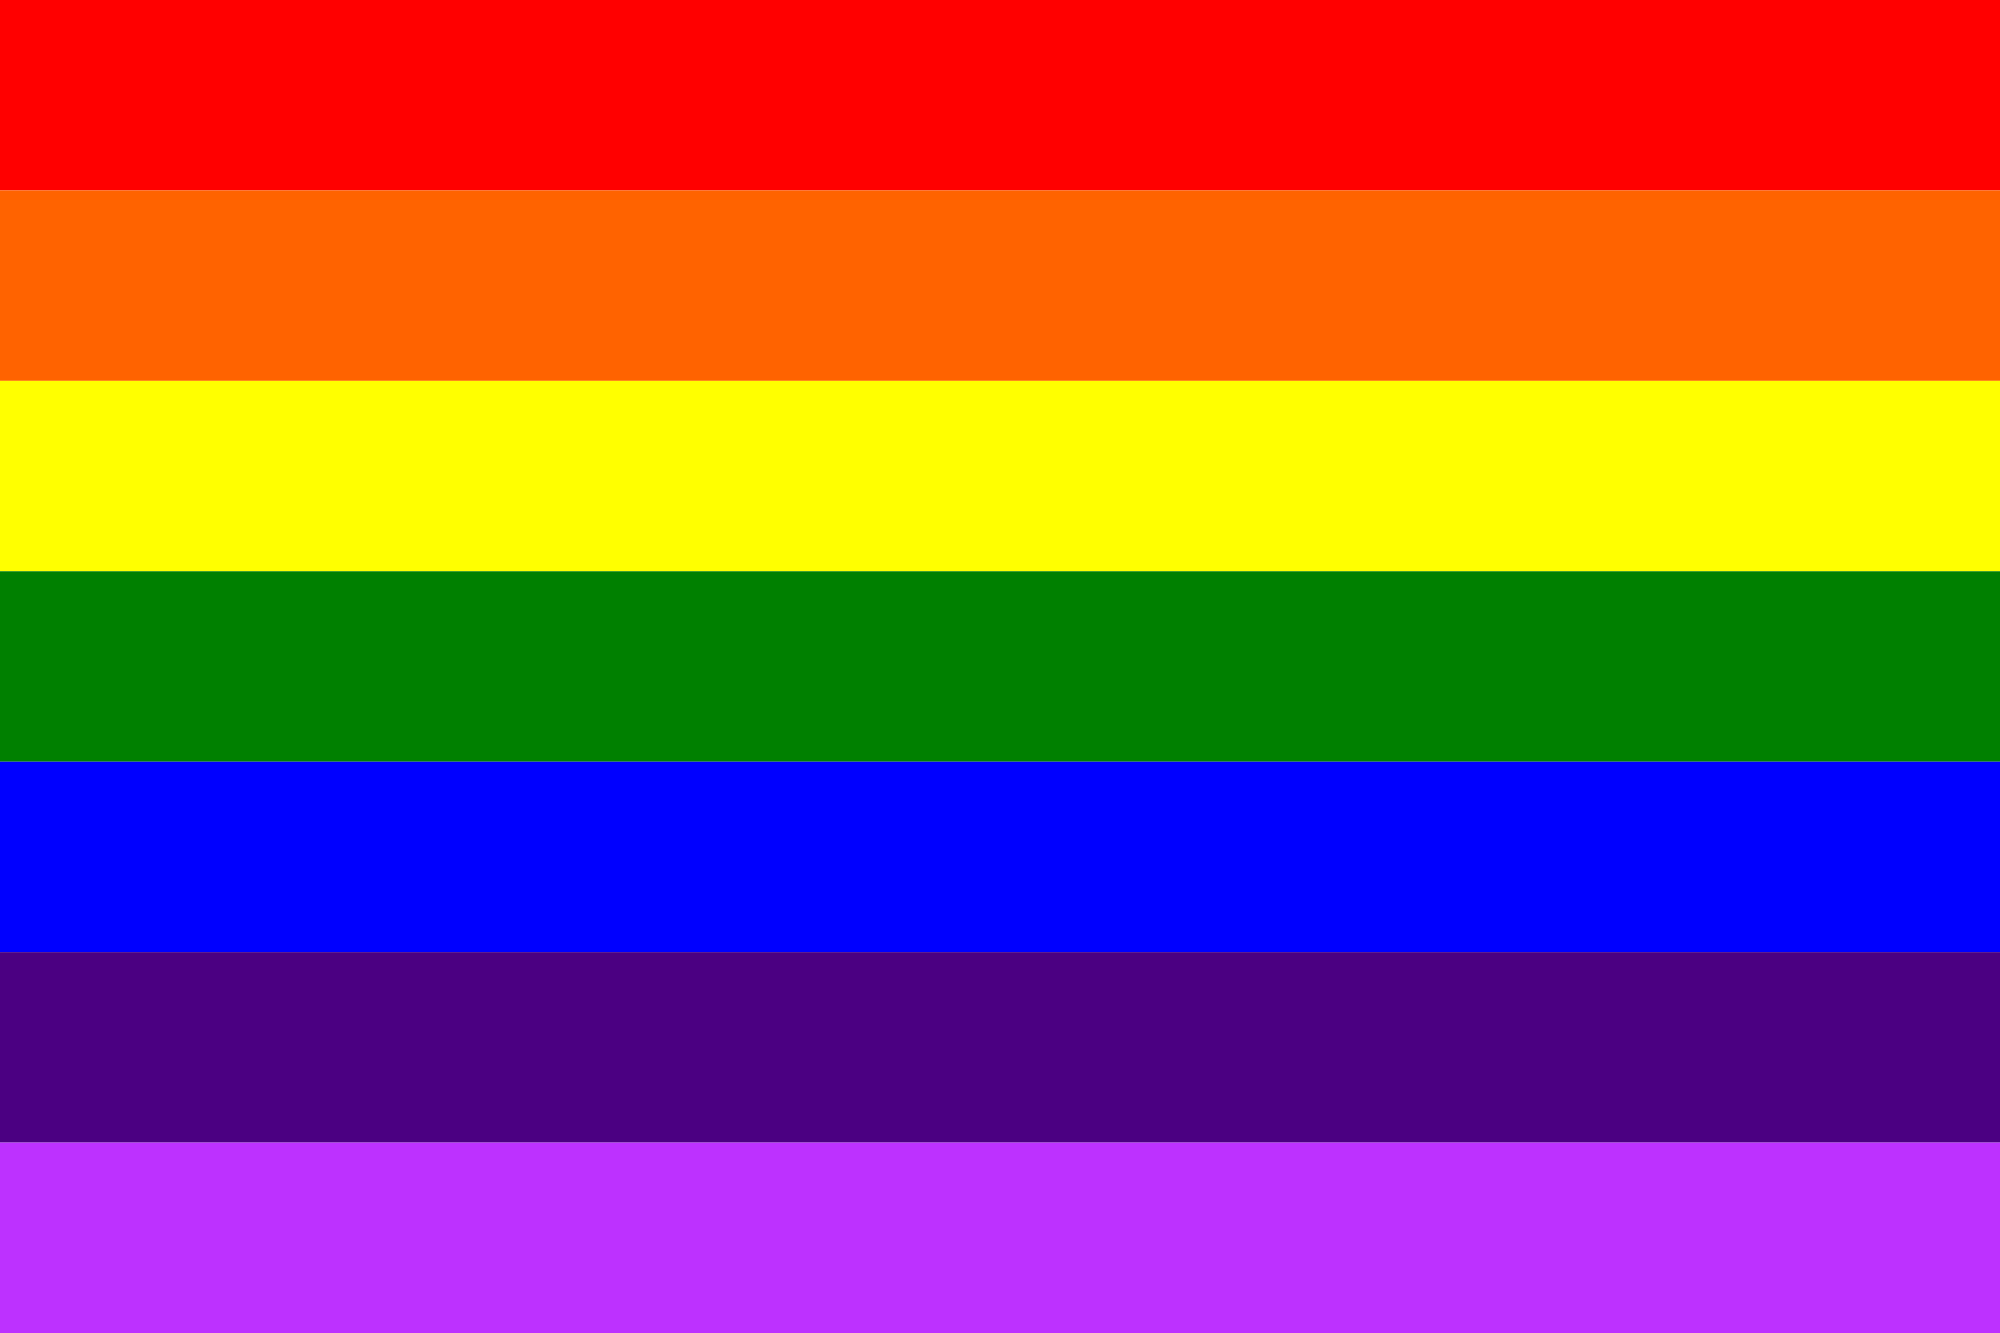 Normally a rainbow flag appears